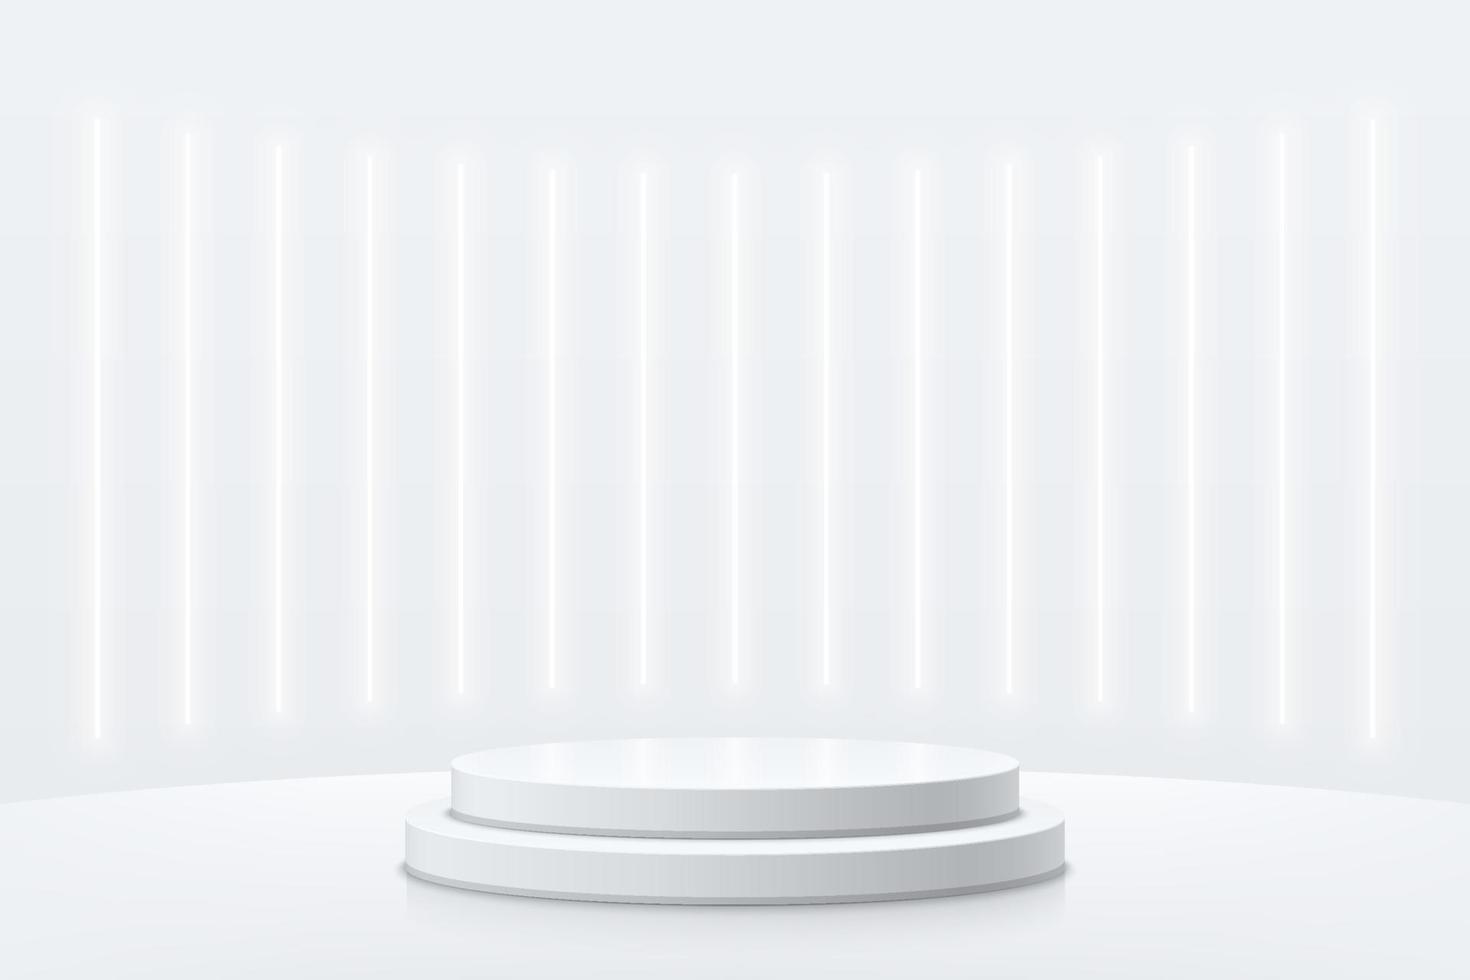 realistisches weißes, silbernes zylindersockelpodium mit vertikaler neonlampenszene. Vektor abstrakter futuristischer Raum mit geometrischen 3D-Formen. minimale szene für mockup-produktpräsentation, werbeanzeige.